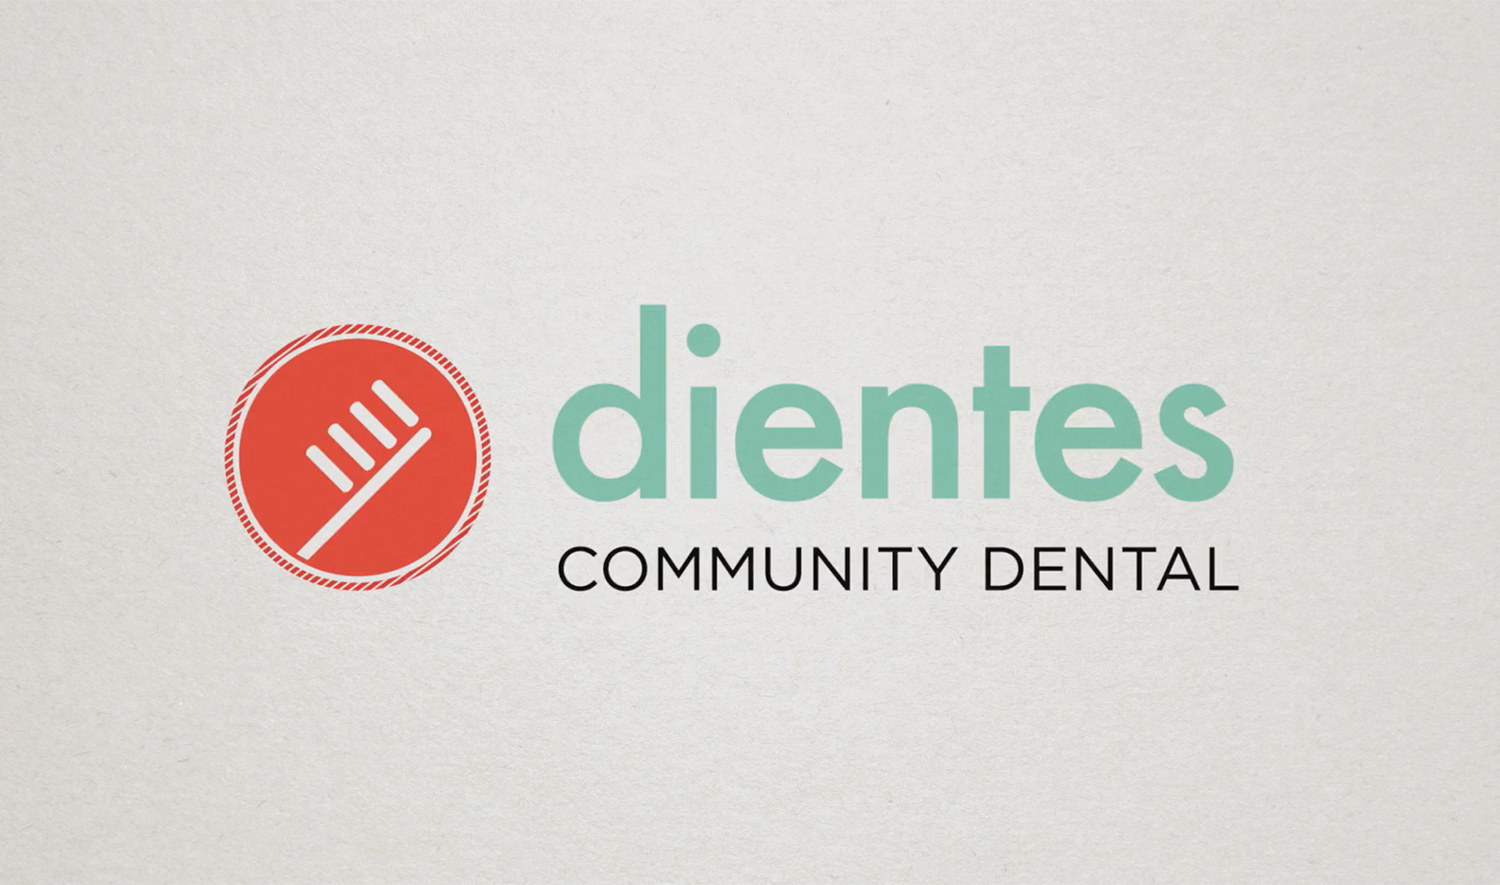 Dientes Community Dental